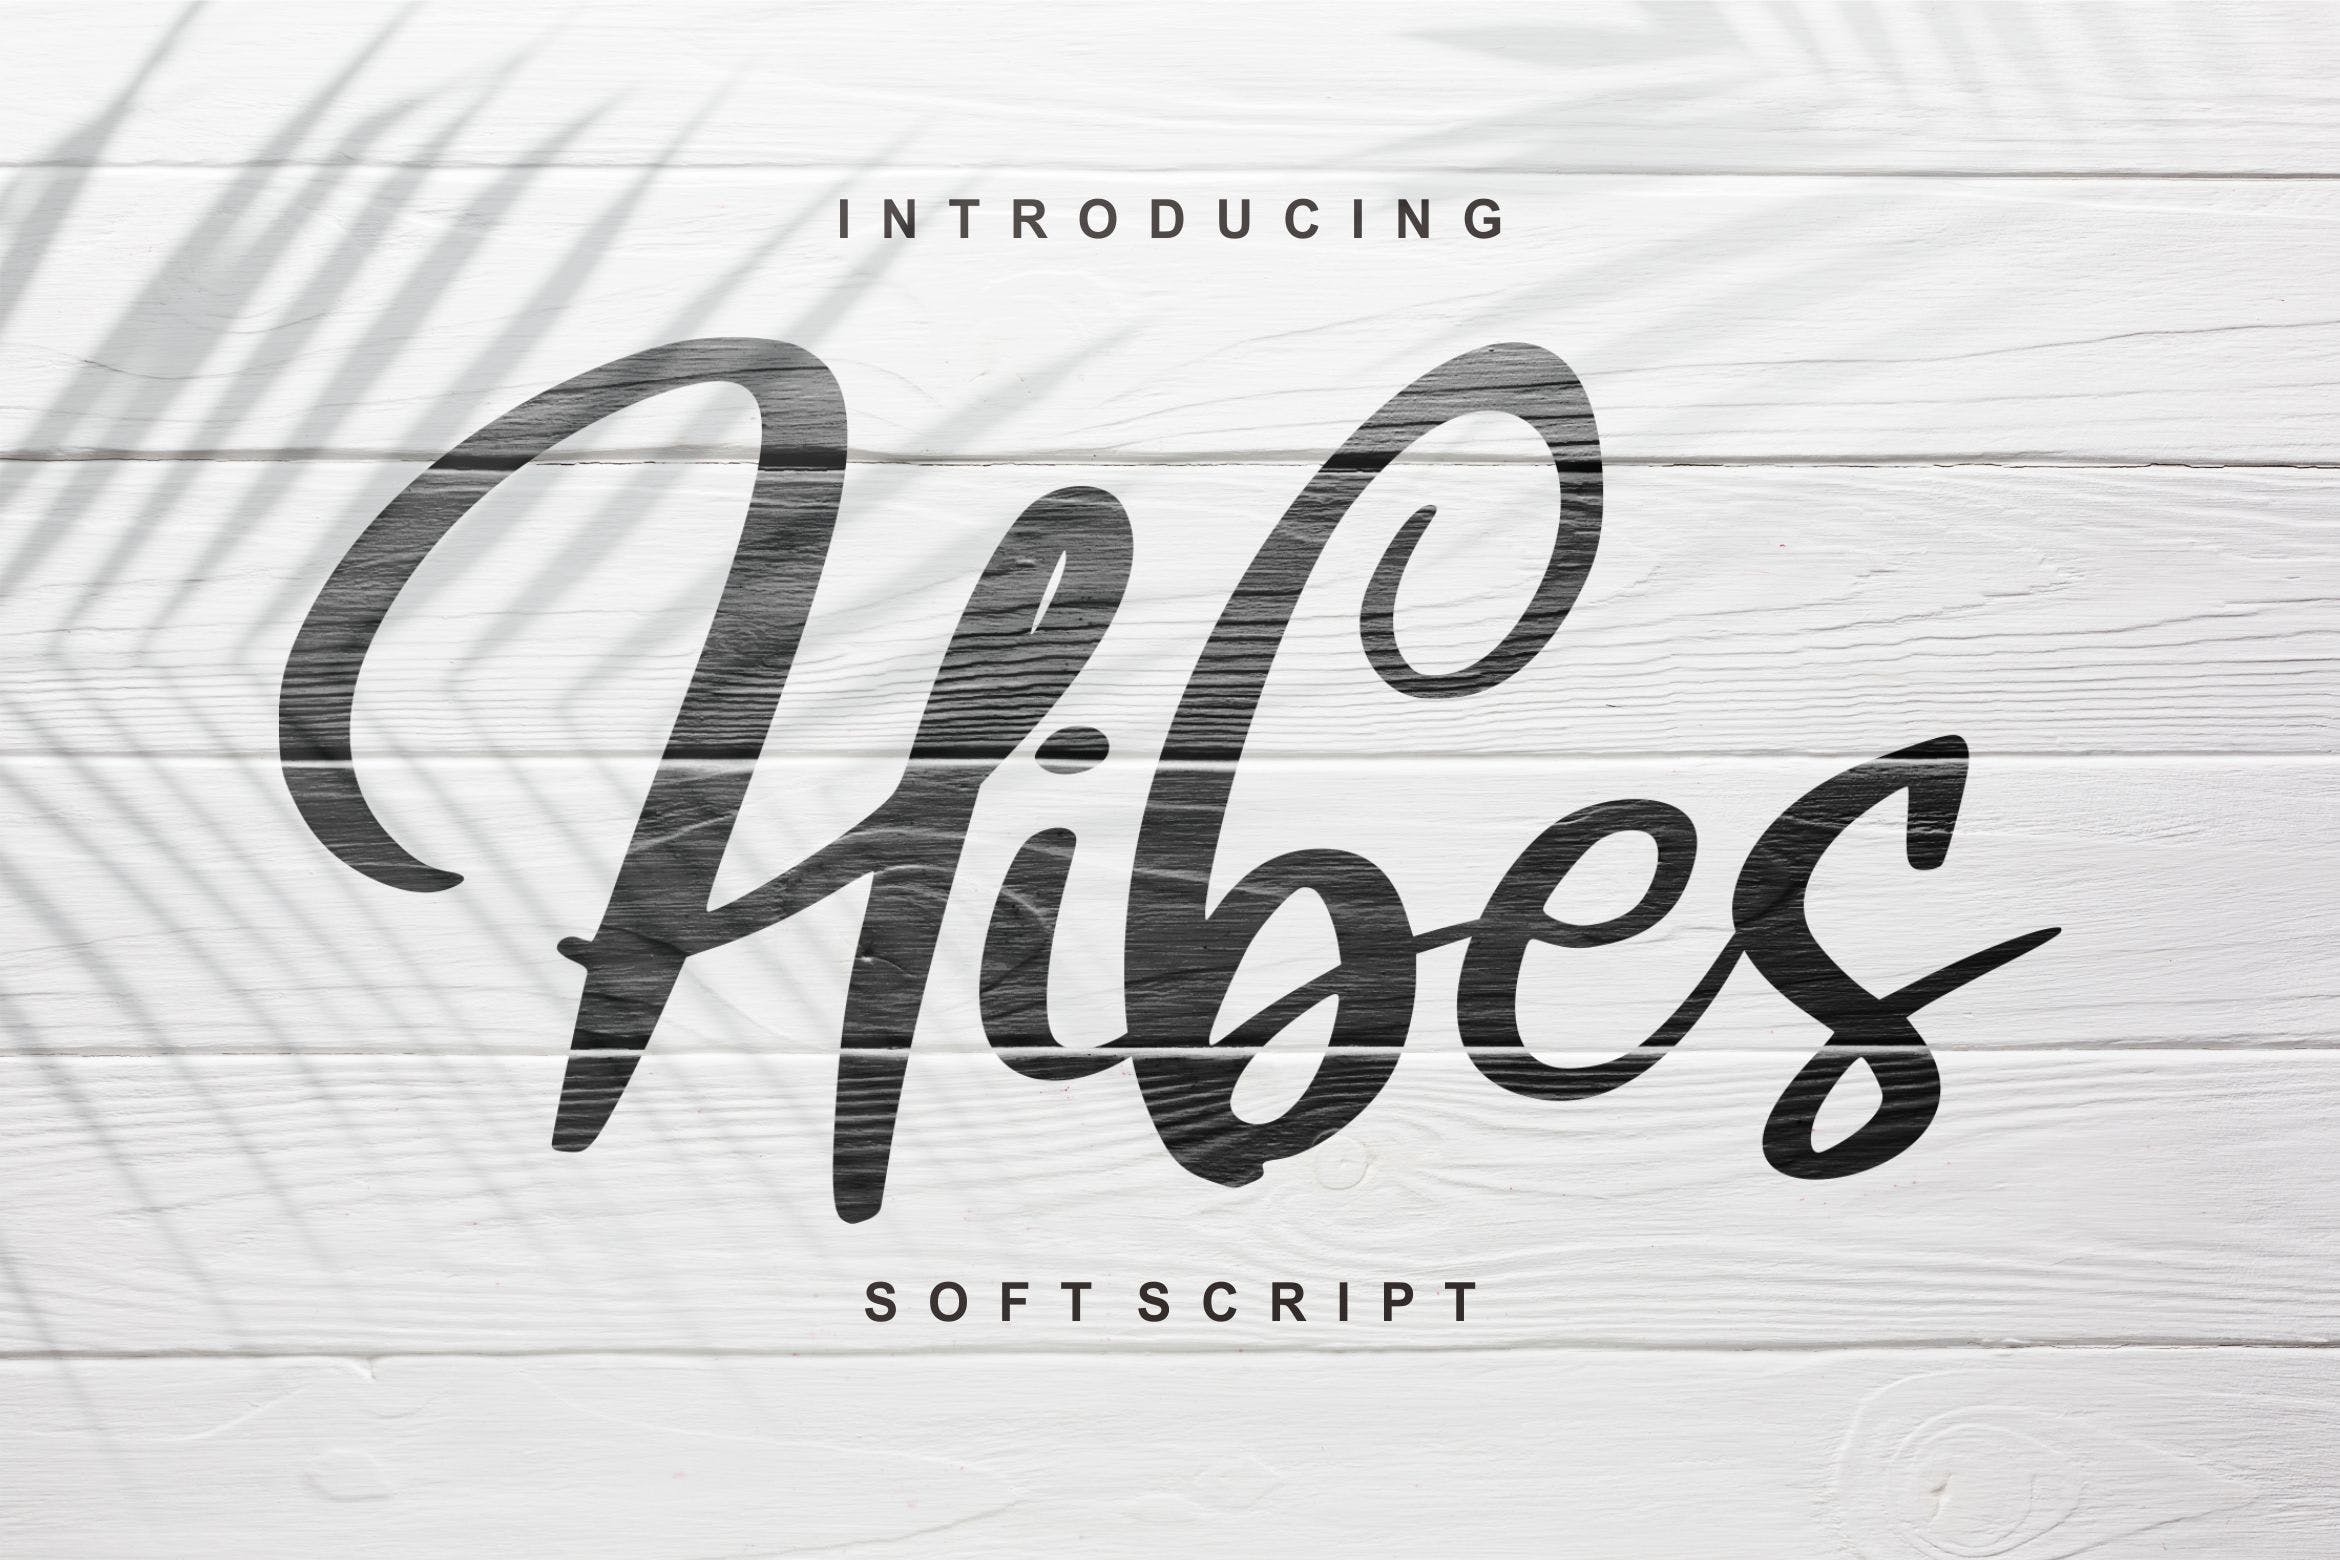 软笔刷书法风格英文手写字体大洋岛精选 Hibes | Soft Script Font插图